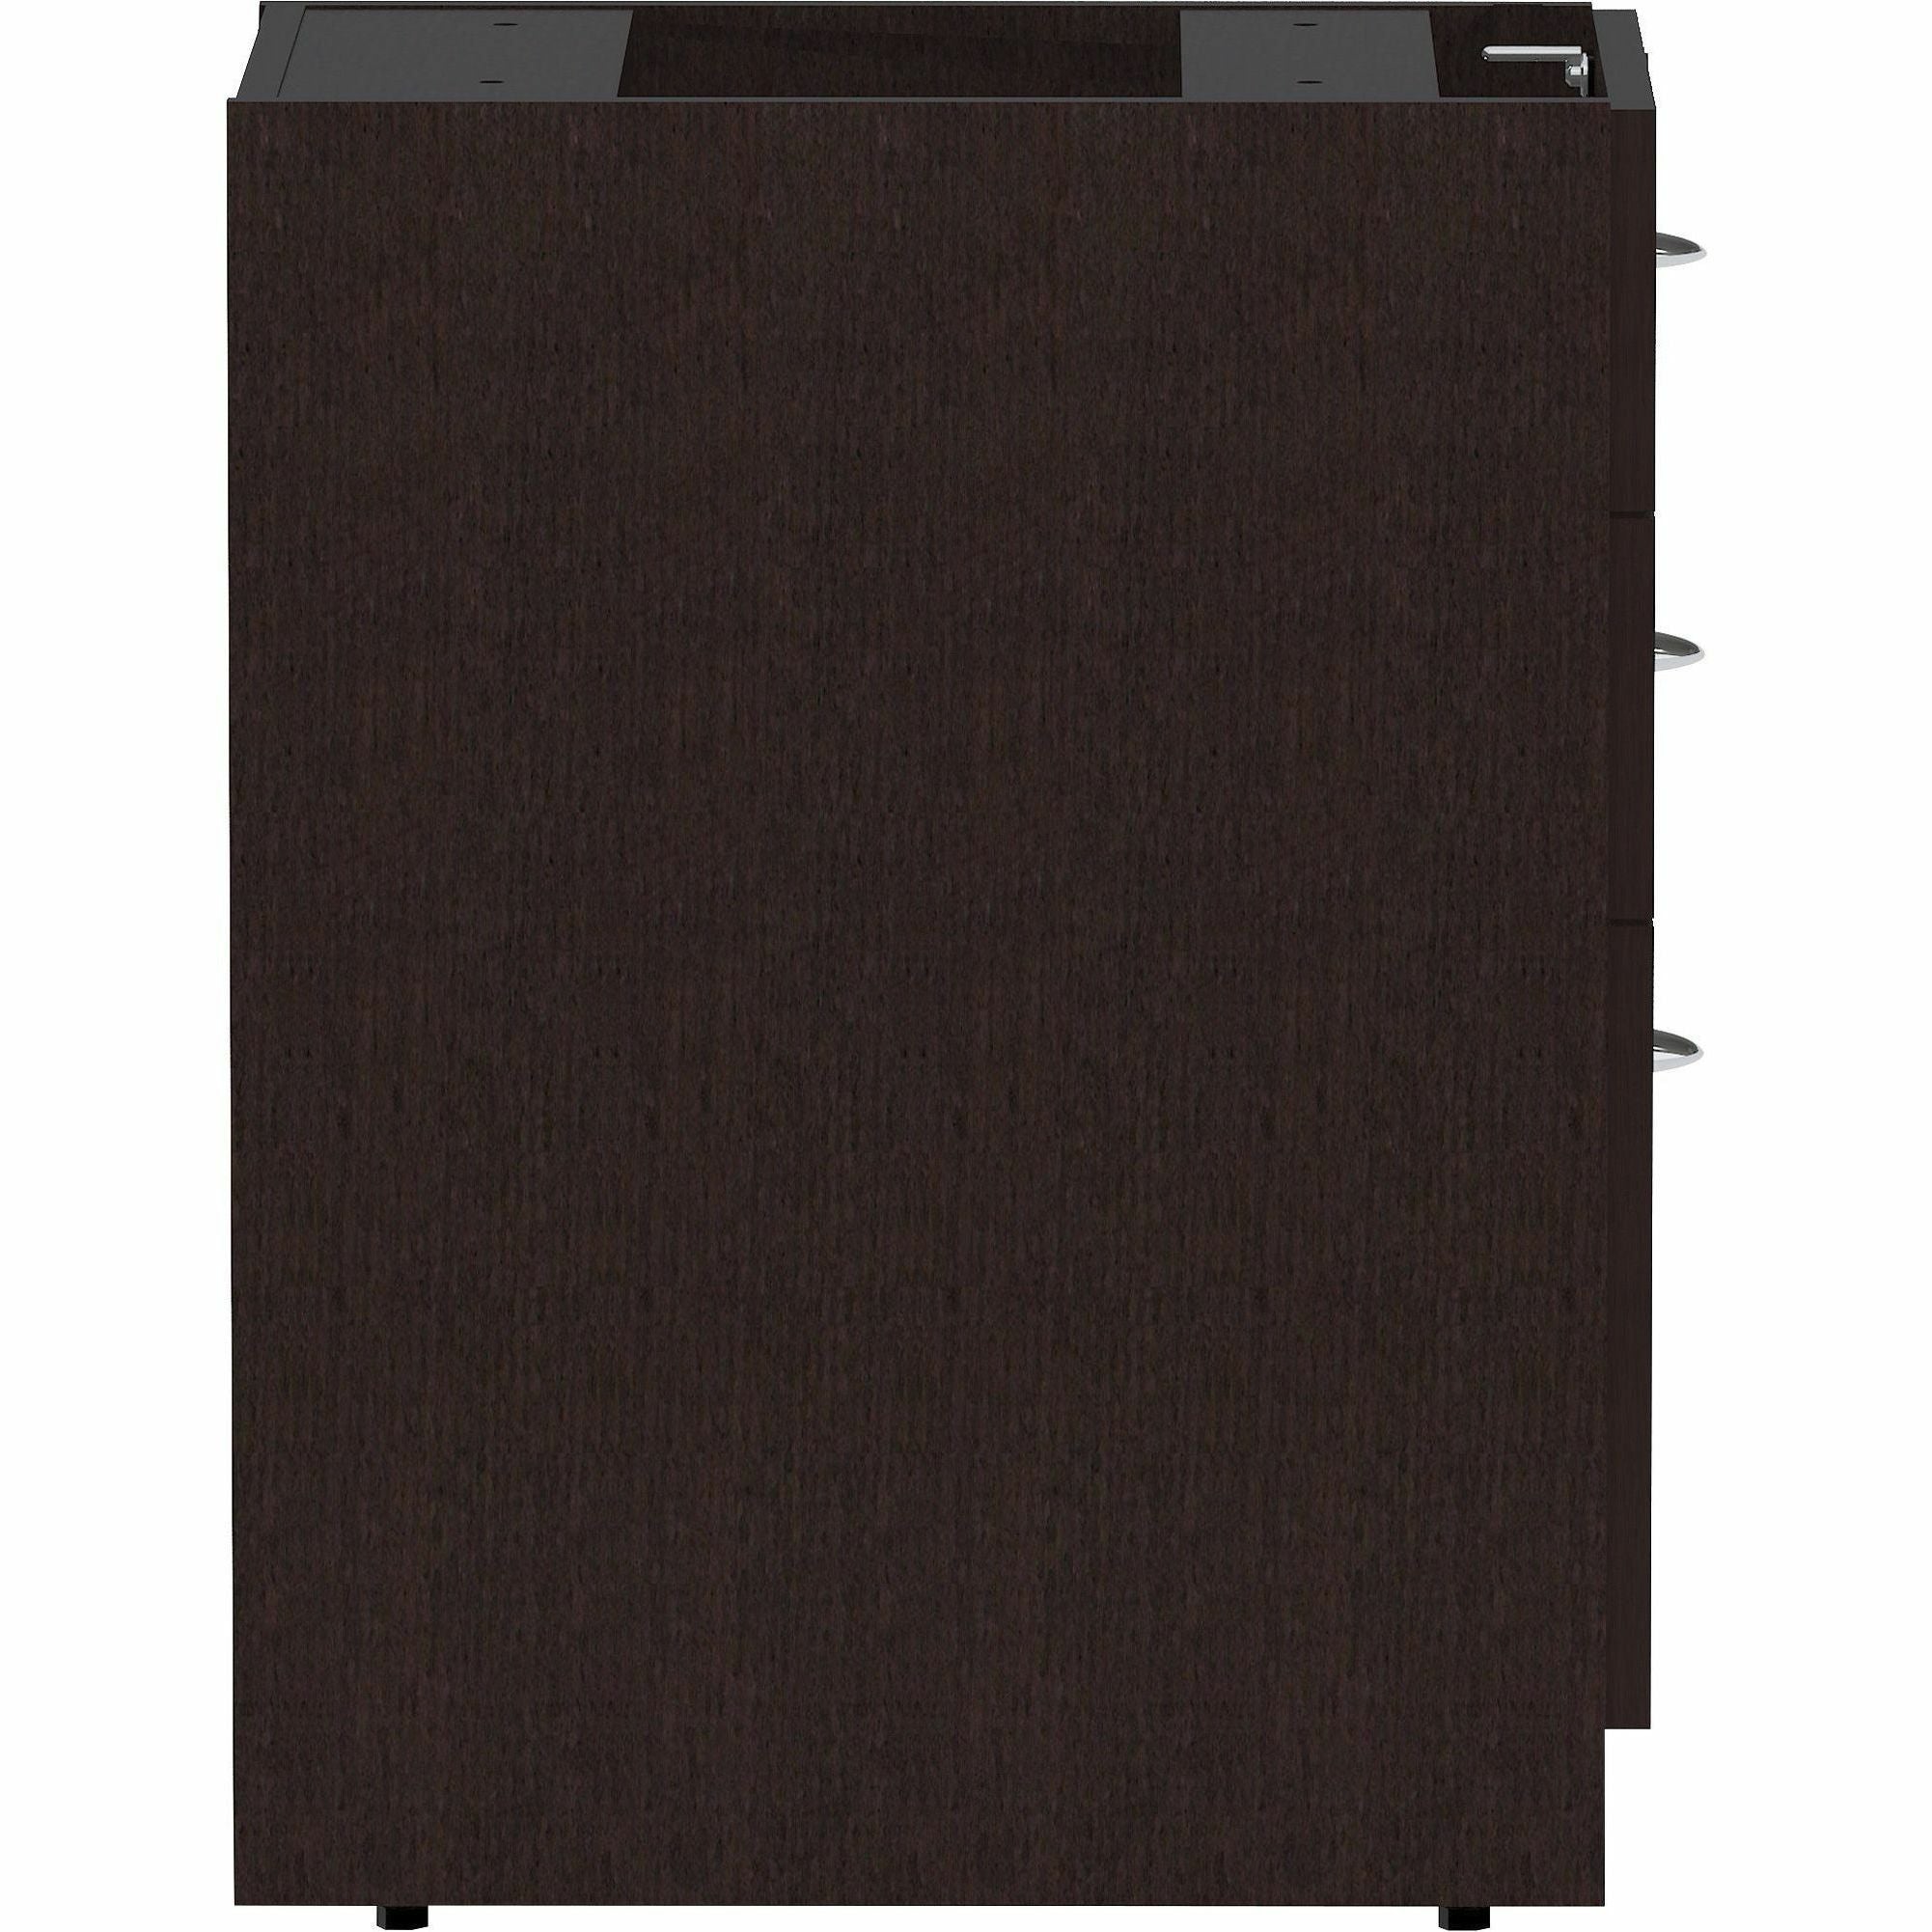 Lorell Essentials Series Box/Box/File Fixed File Cabinet - 16" x 22" x 28.3" Pedestal - Finish: Espresso, Silver Brush - 4